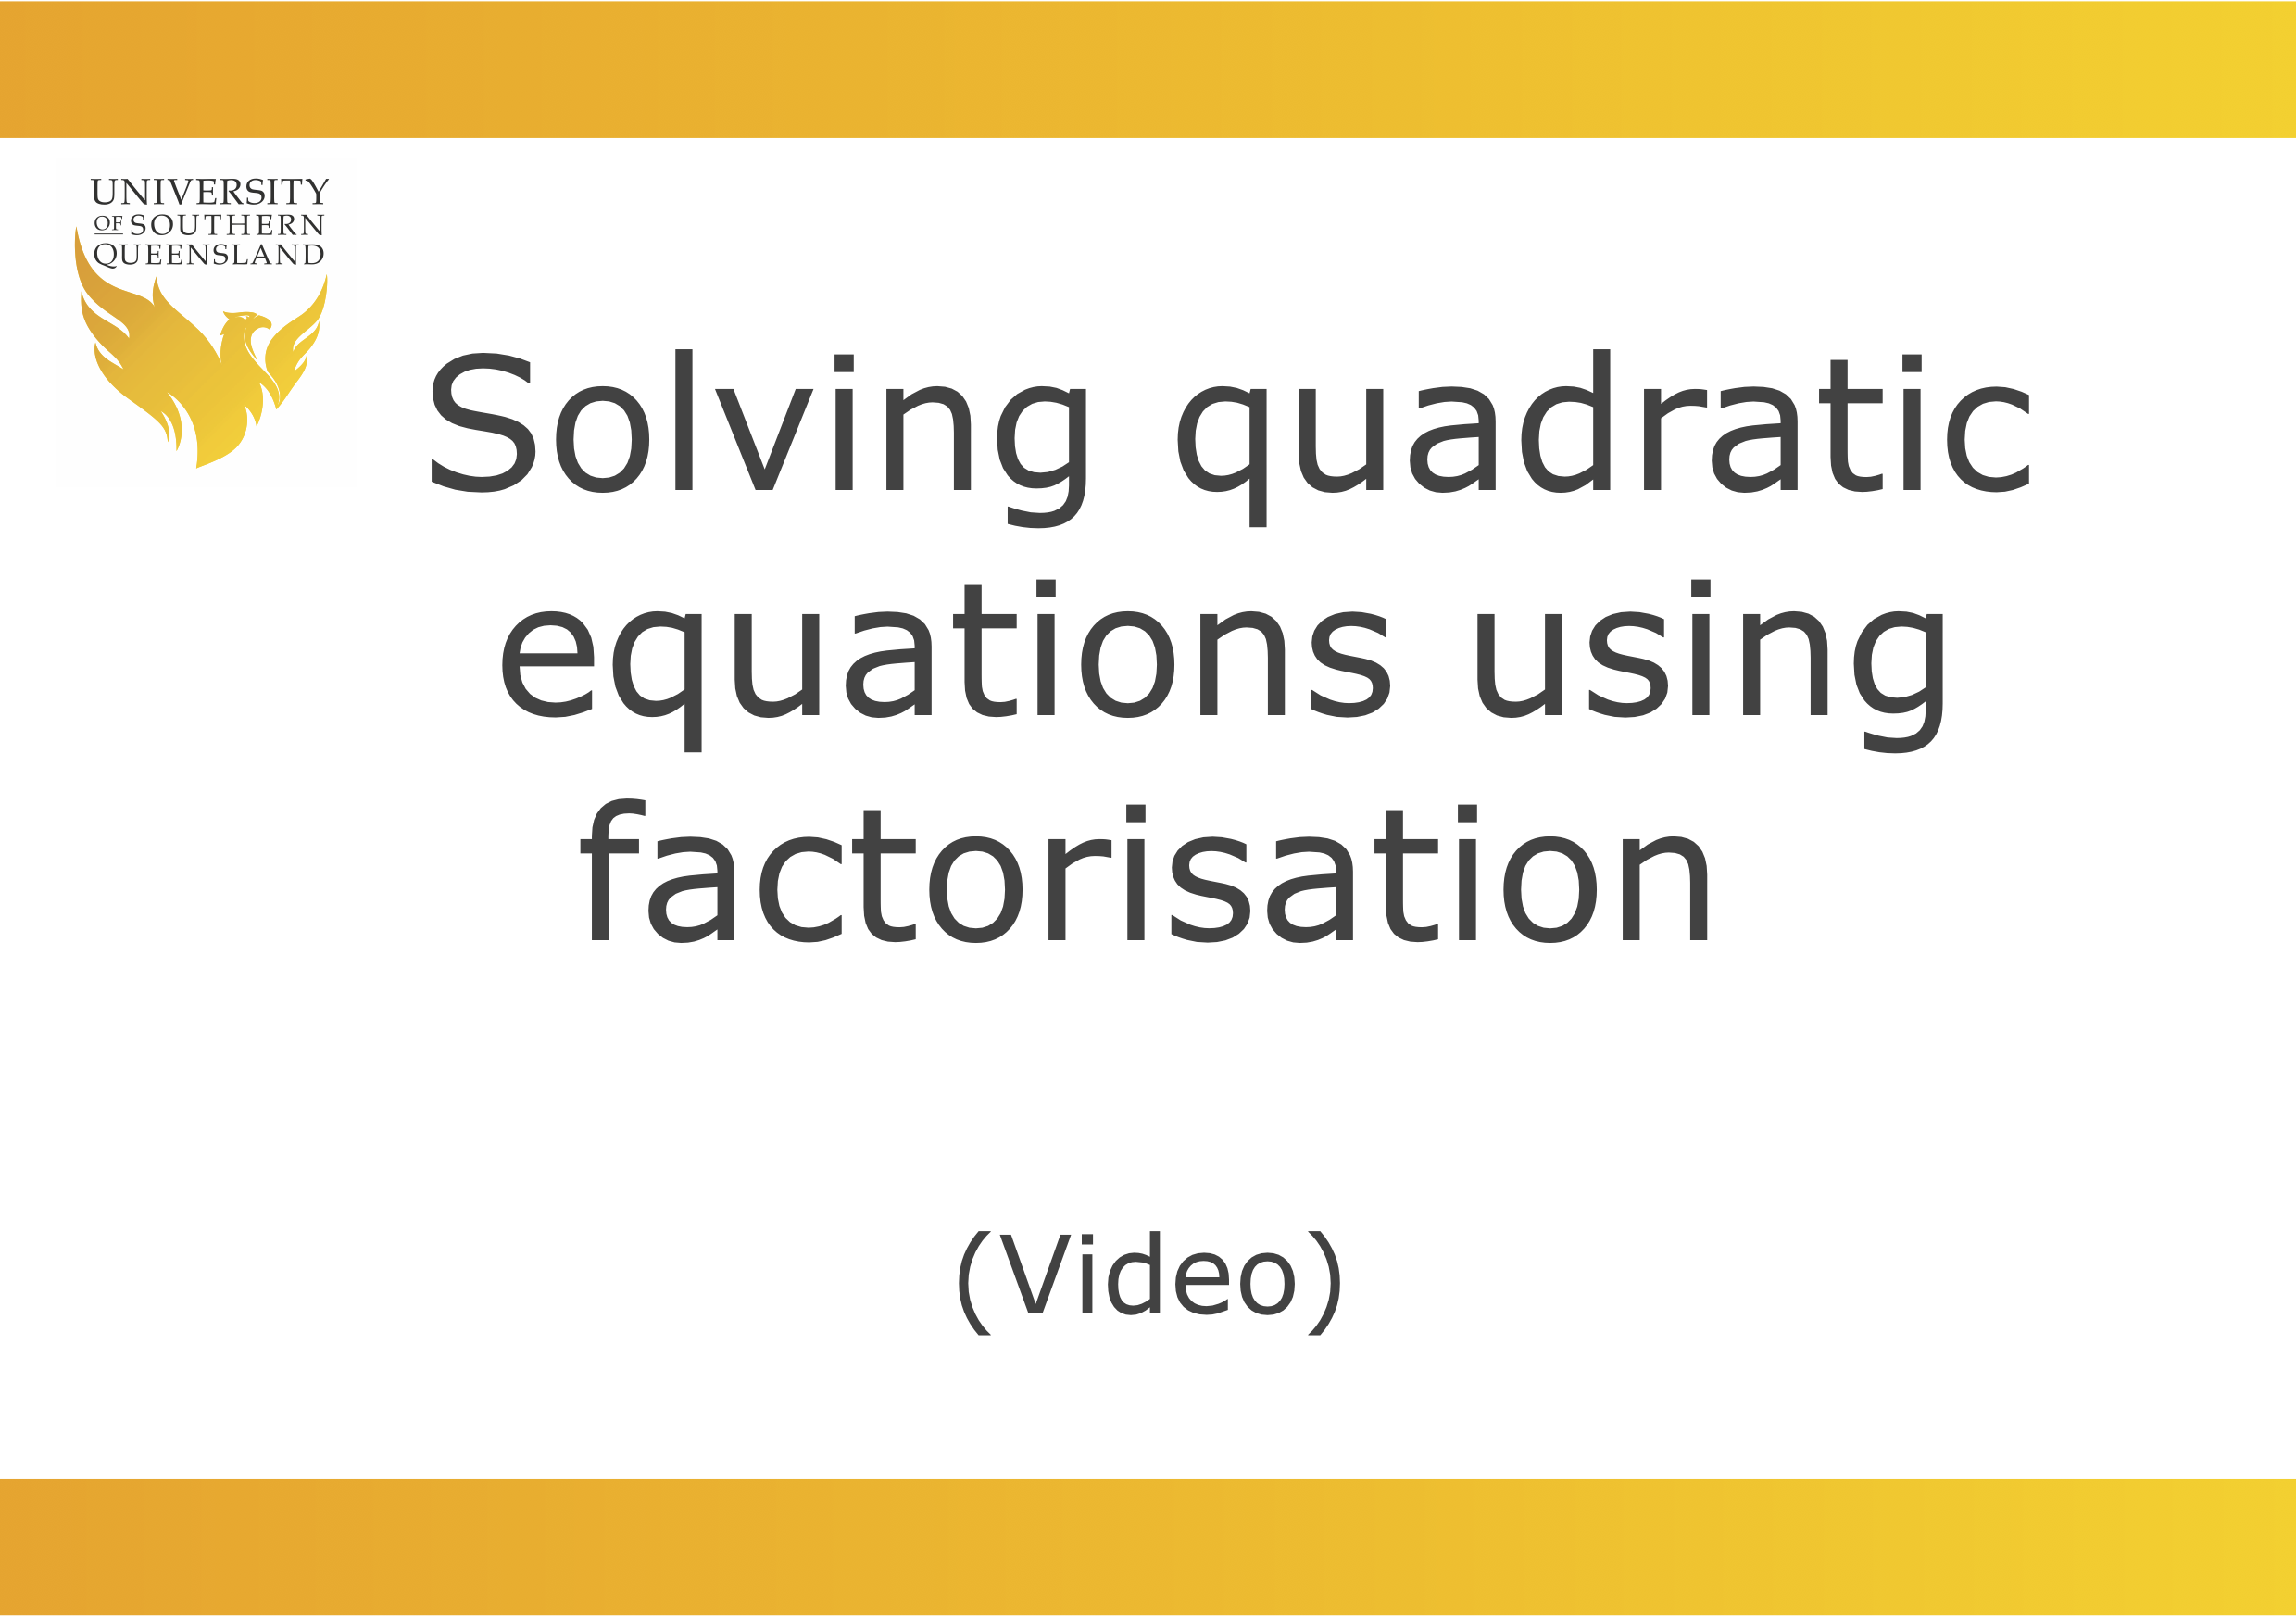 Solving quadratic equations using factorisation video